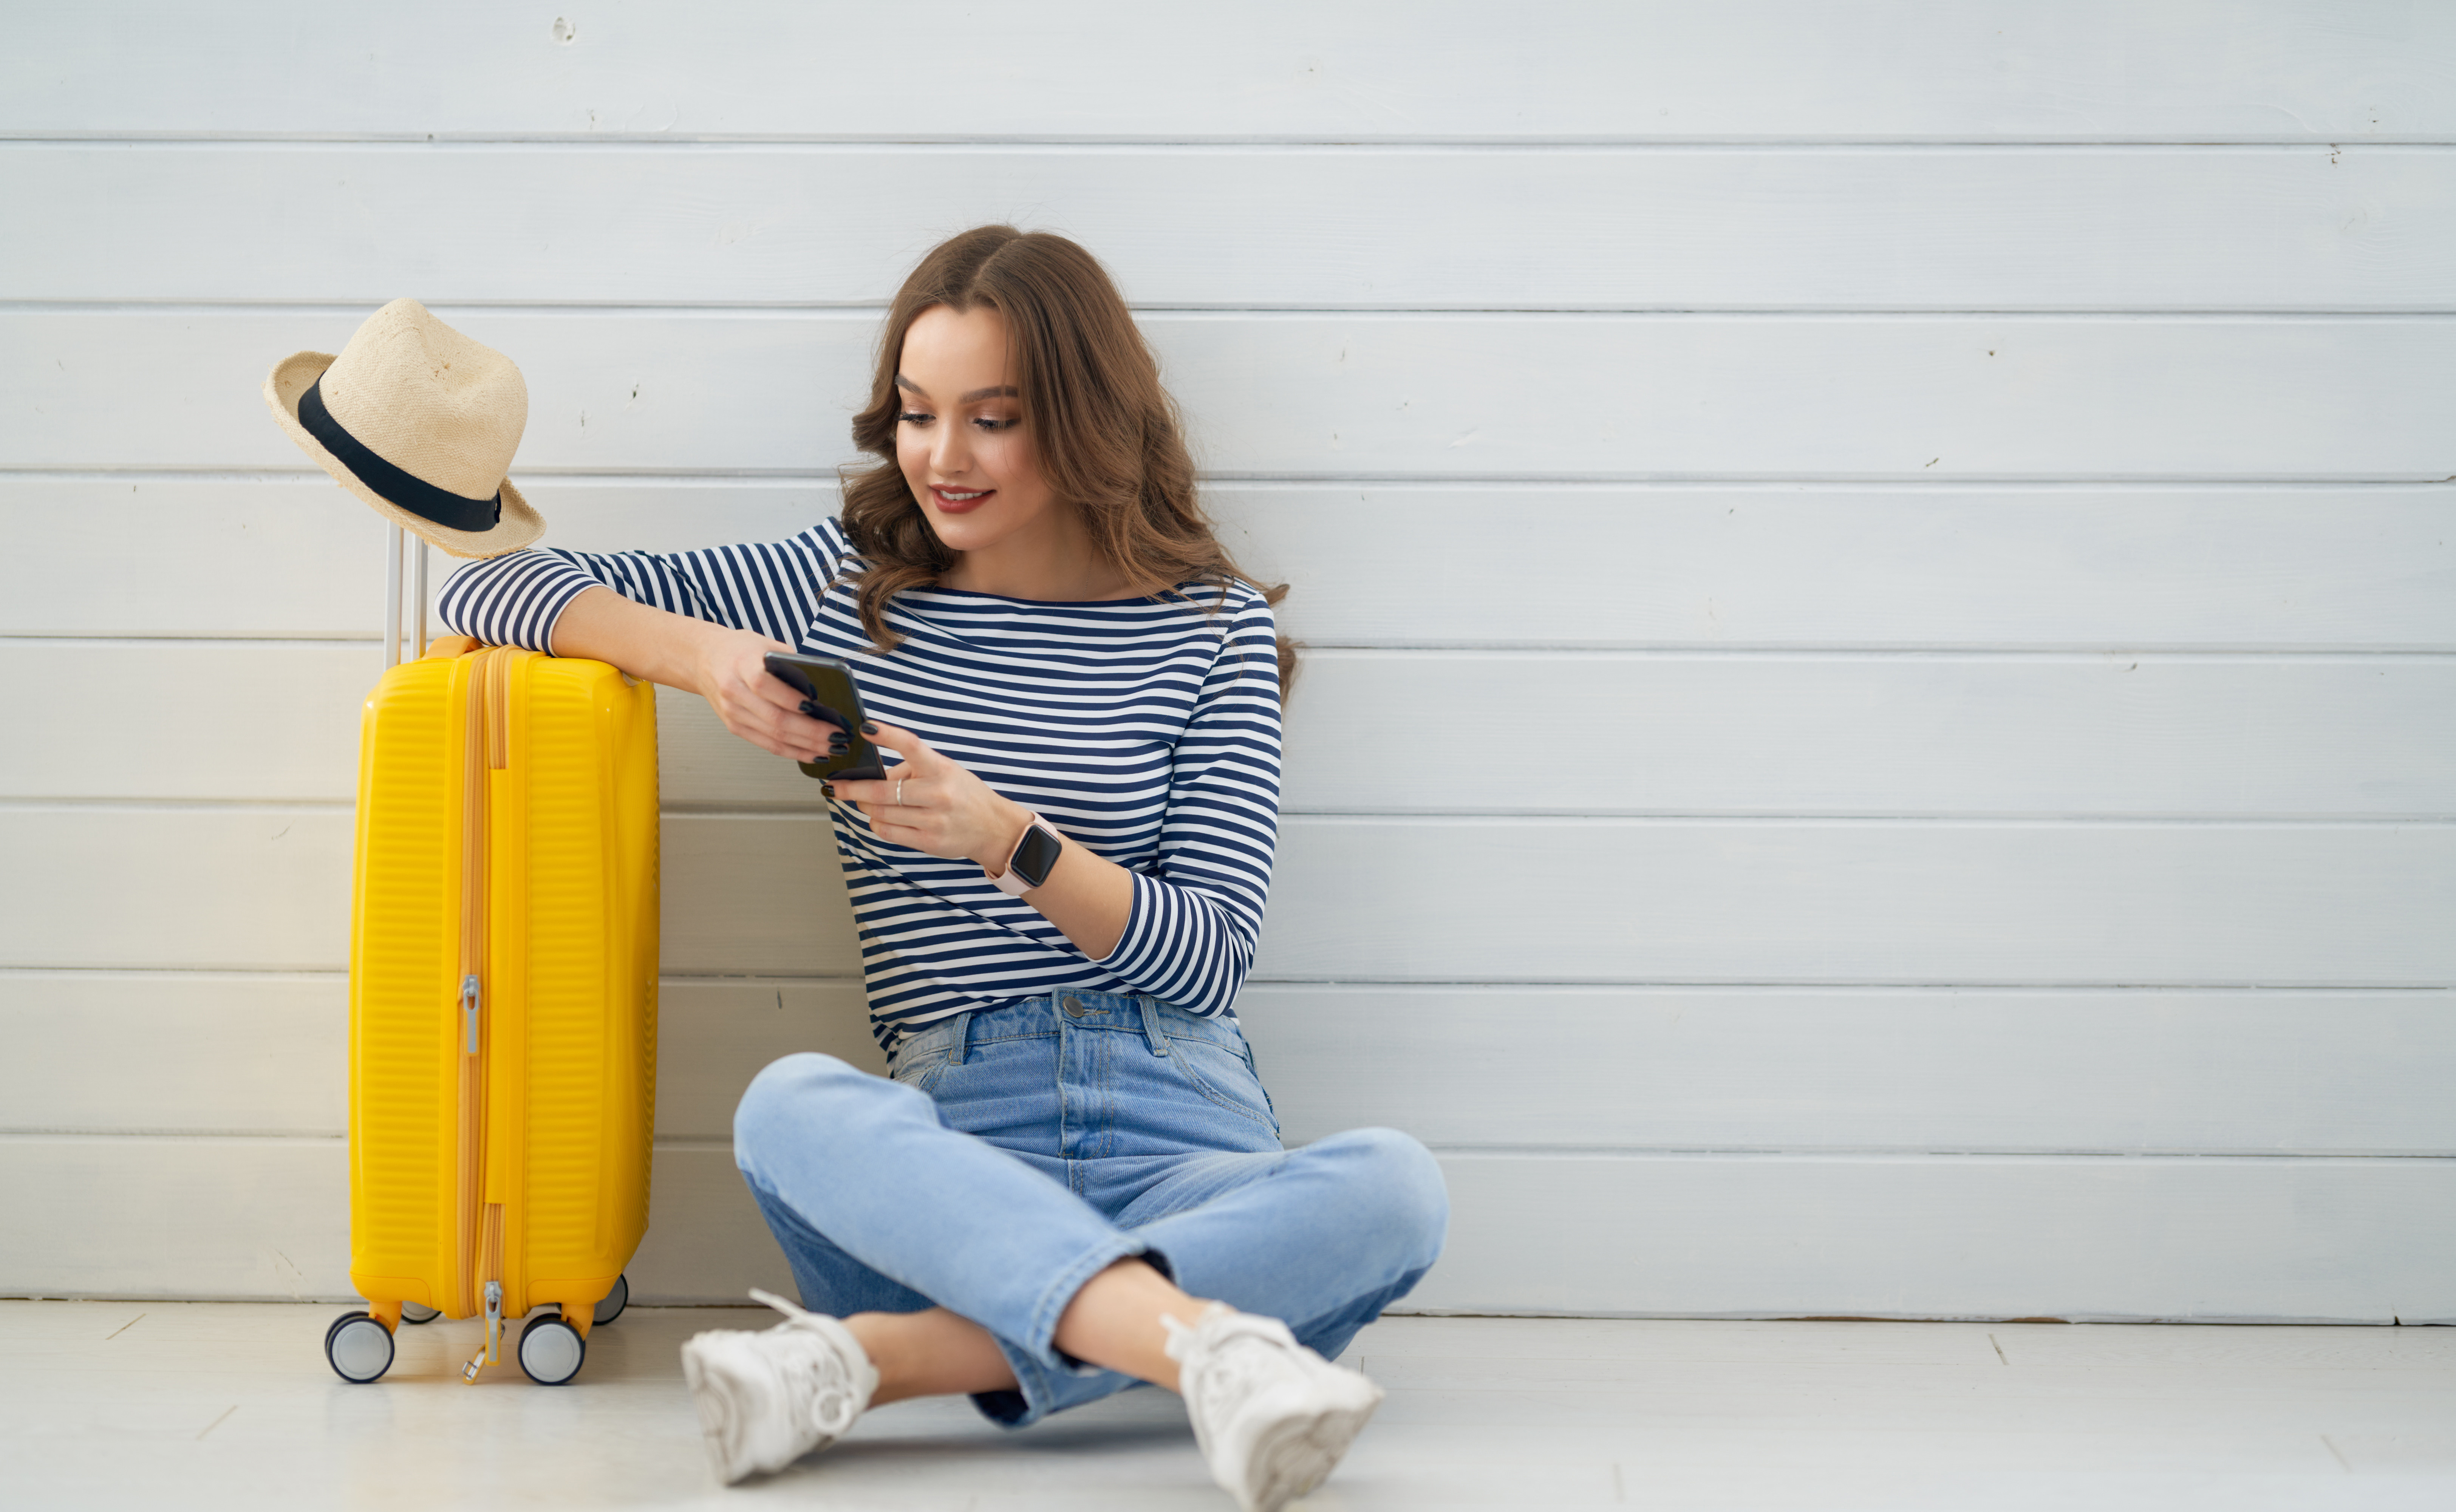 Bagageförsäkring - Kvinna med blårandig tröja och jeans sitter på golvet och använder sin smartphone bredvid en gul resväska.